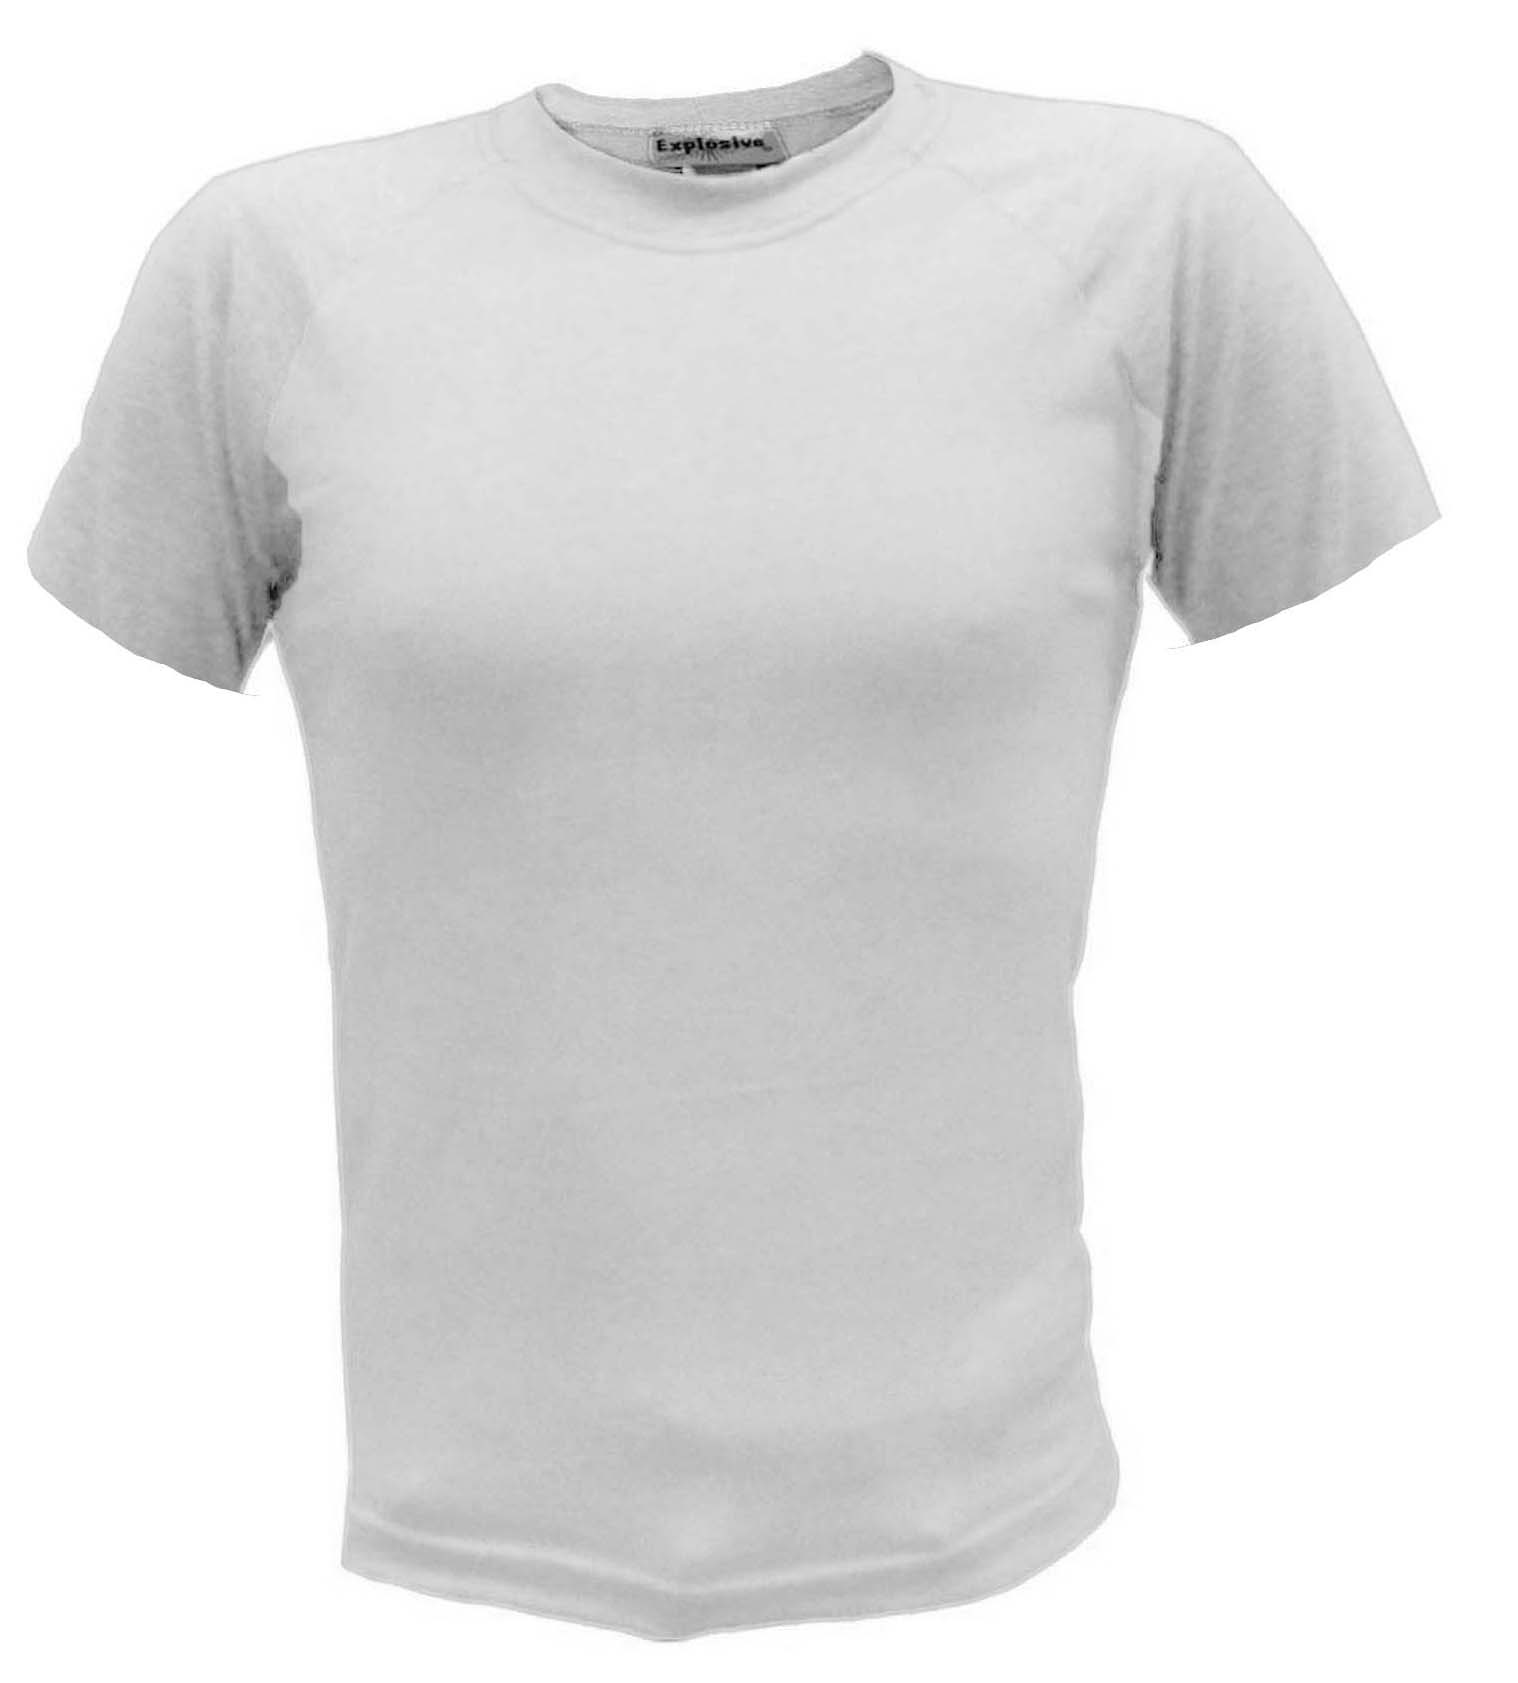 T-shirt blanca manga corta ranglán